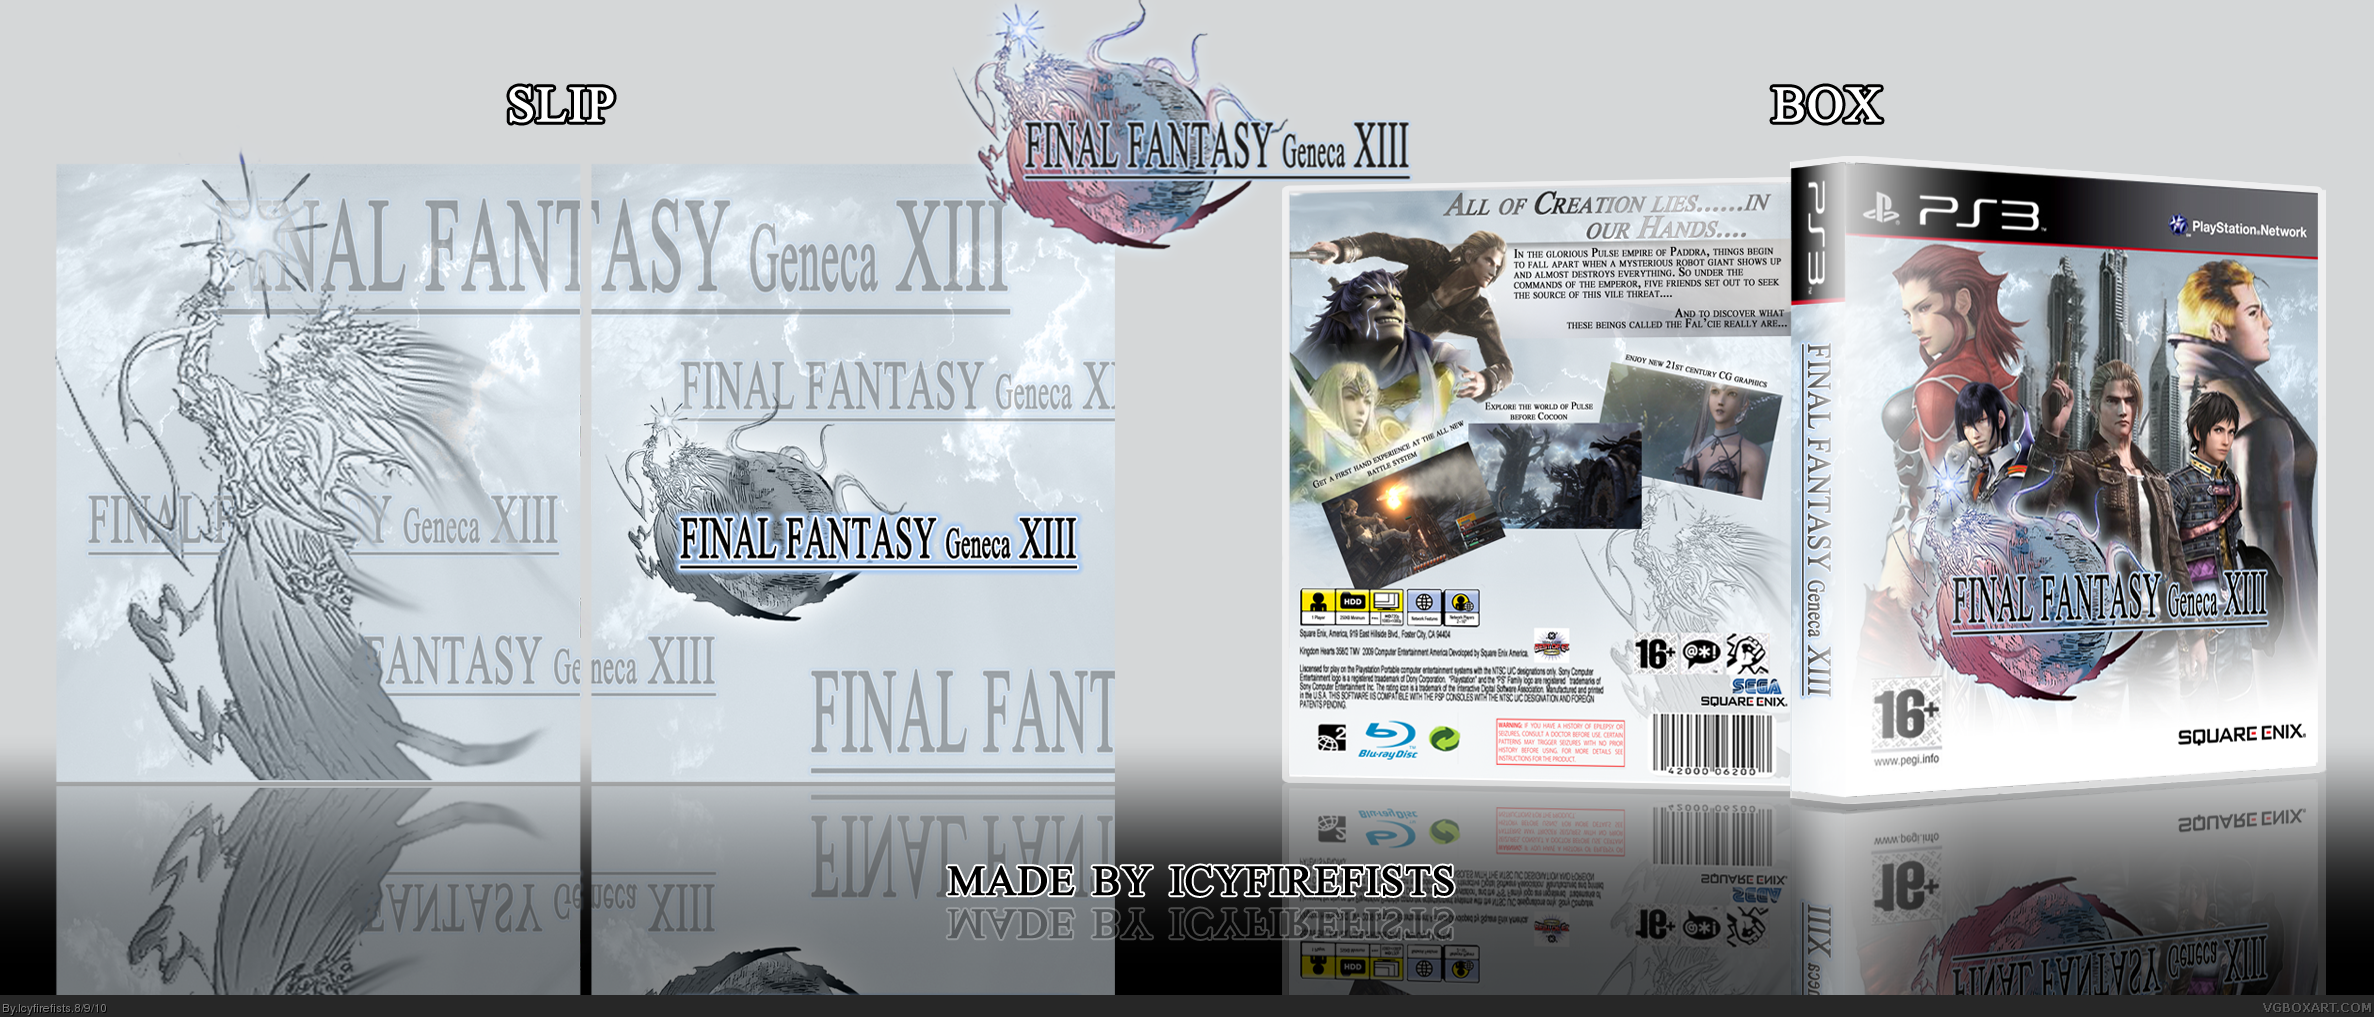 Final Fantasy Geneca XIII box cover